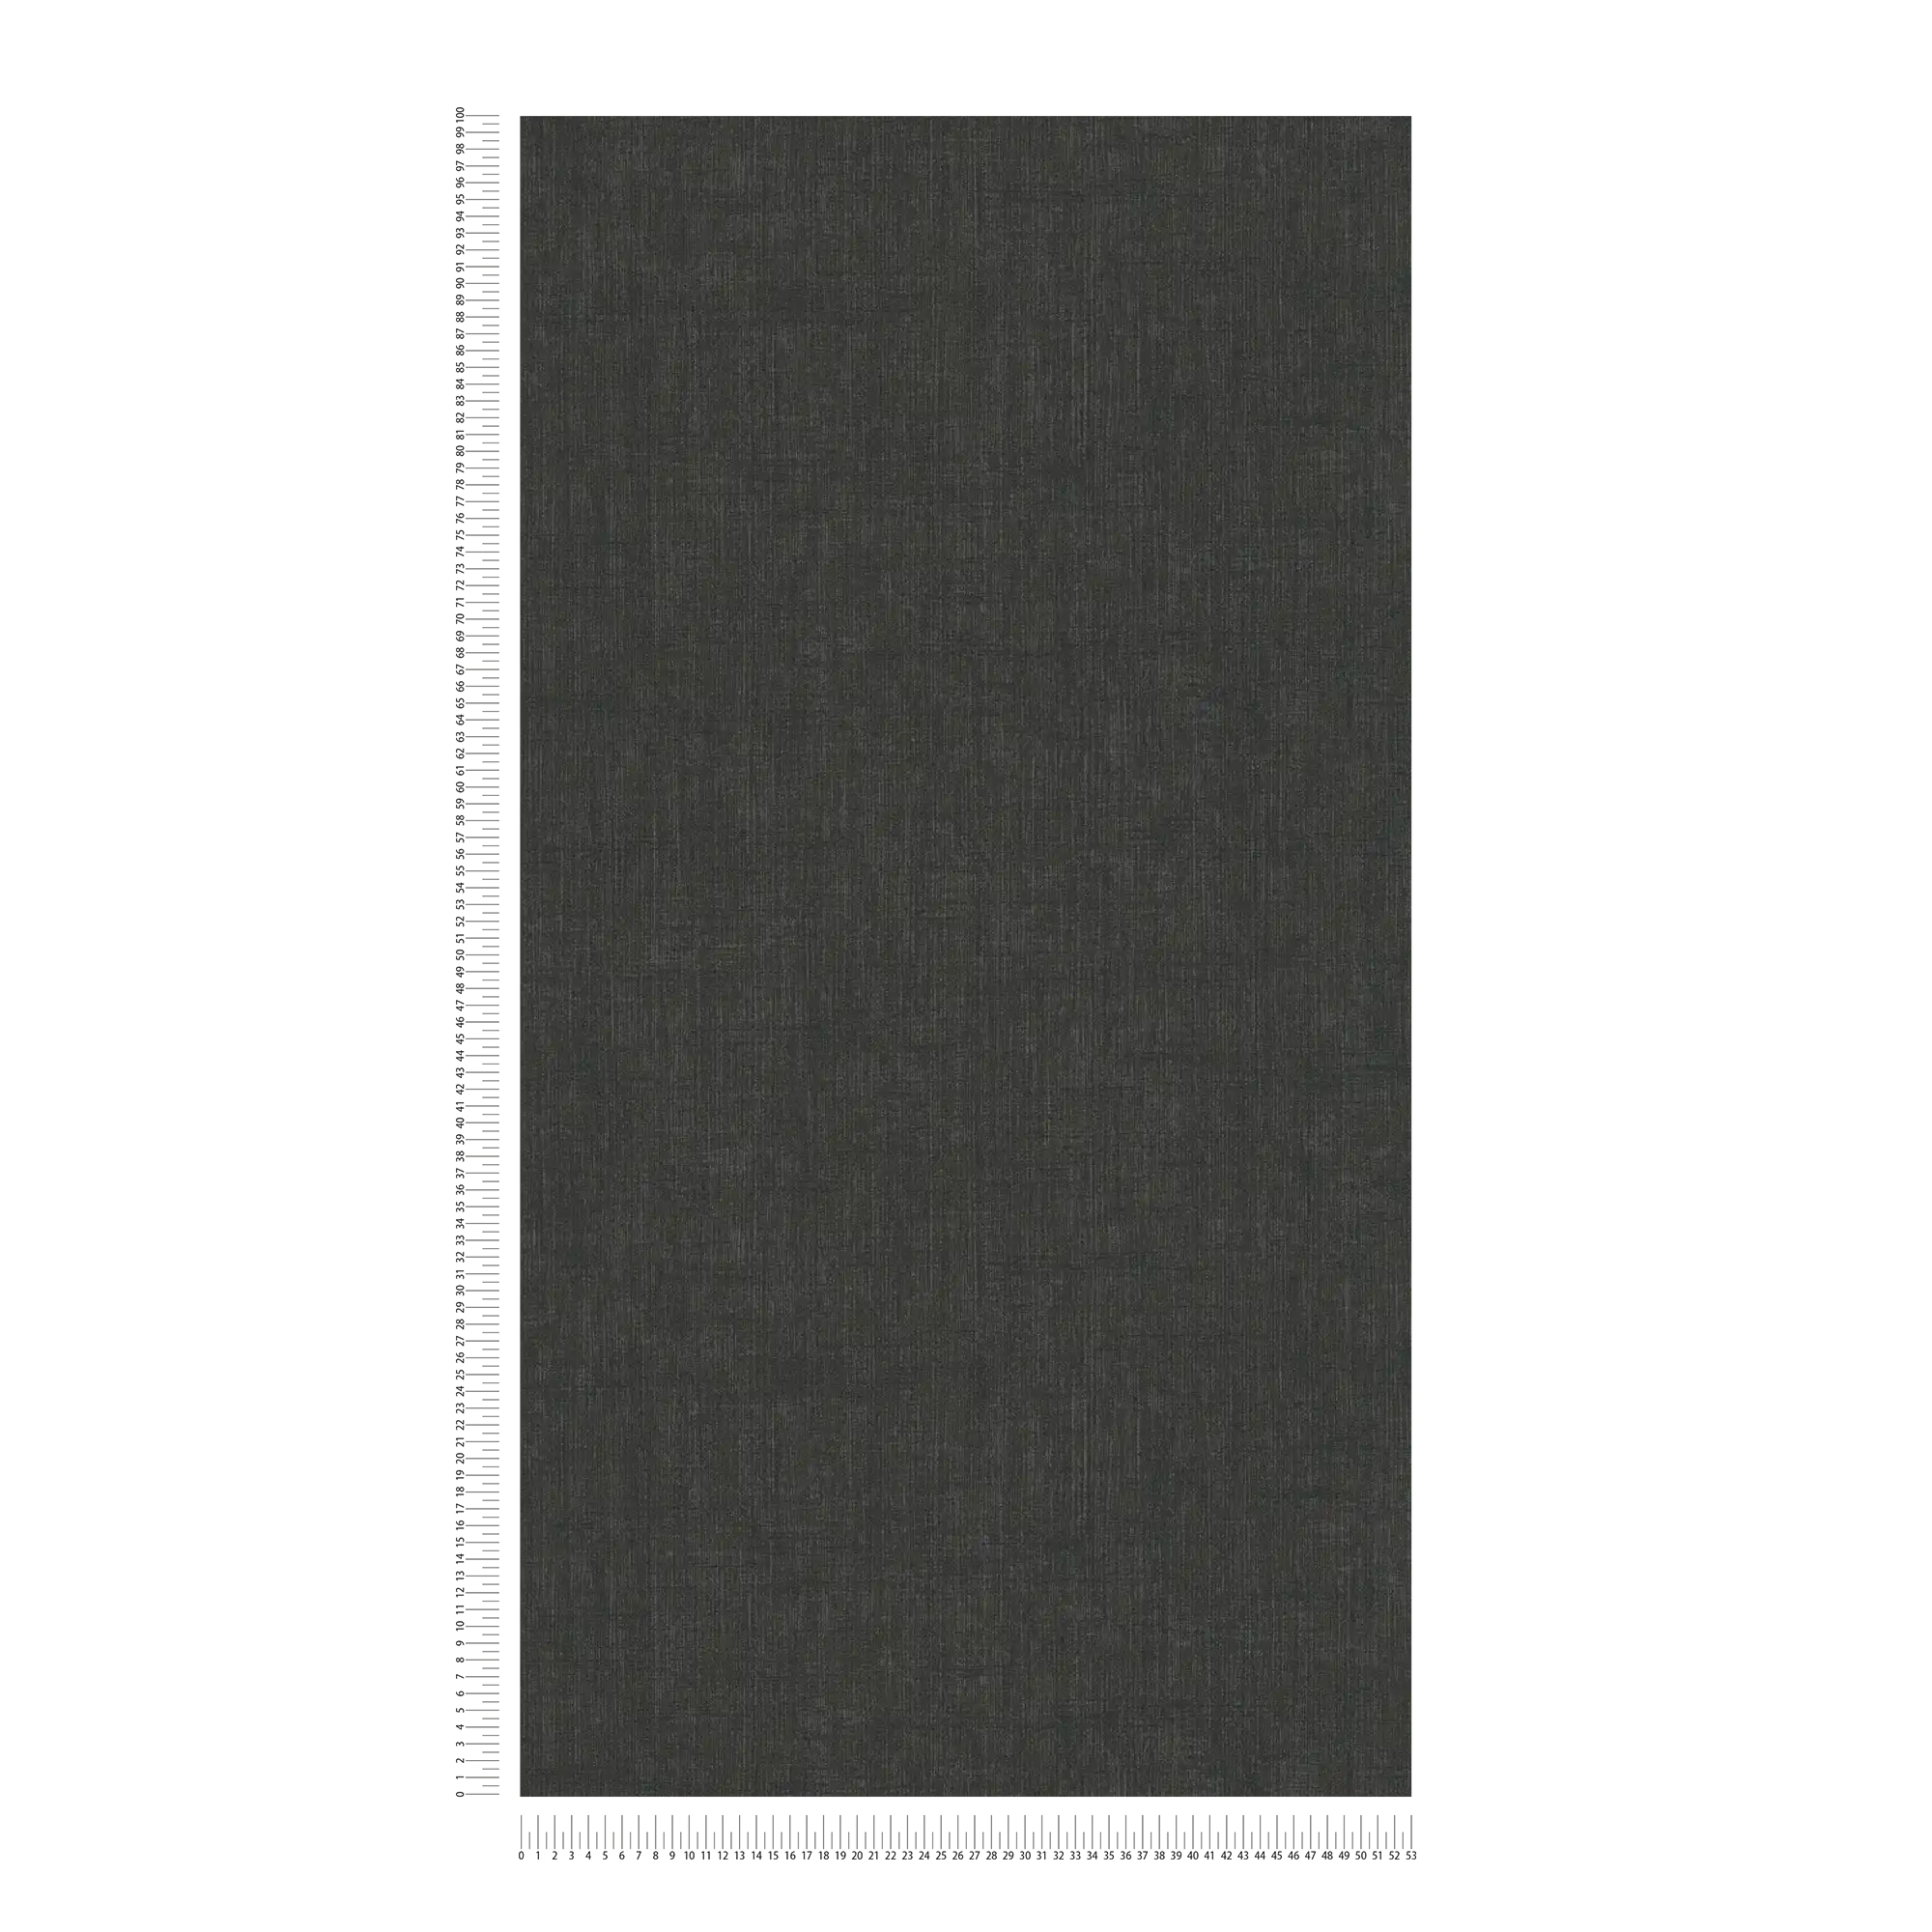             Carta da parati in tessuto non tessuto nero con motivo tessile pastoso
        